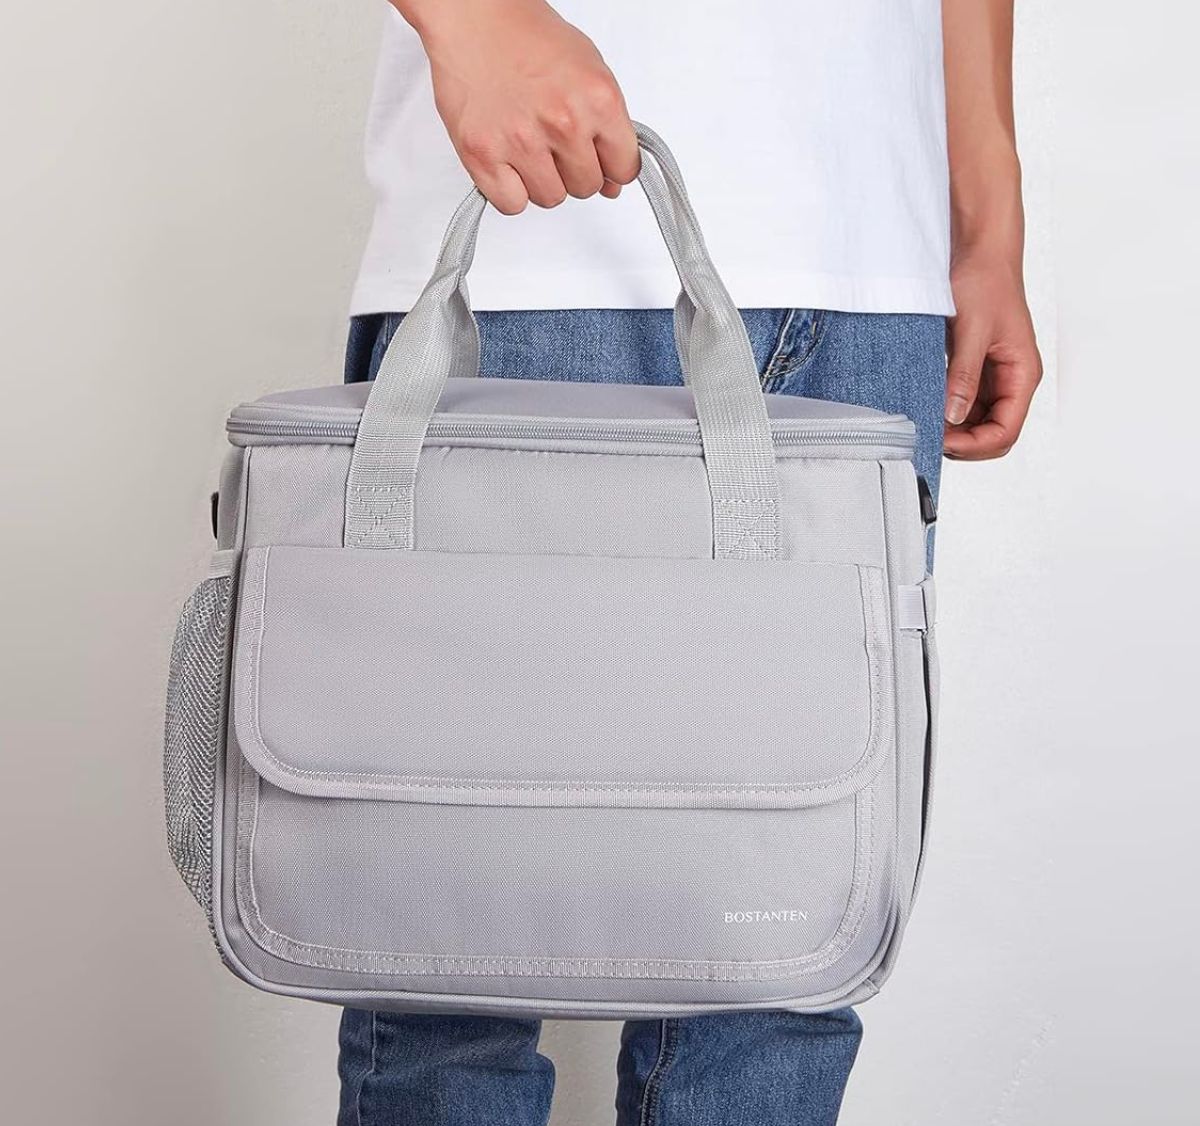 man carrying gray cooler bag